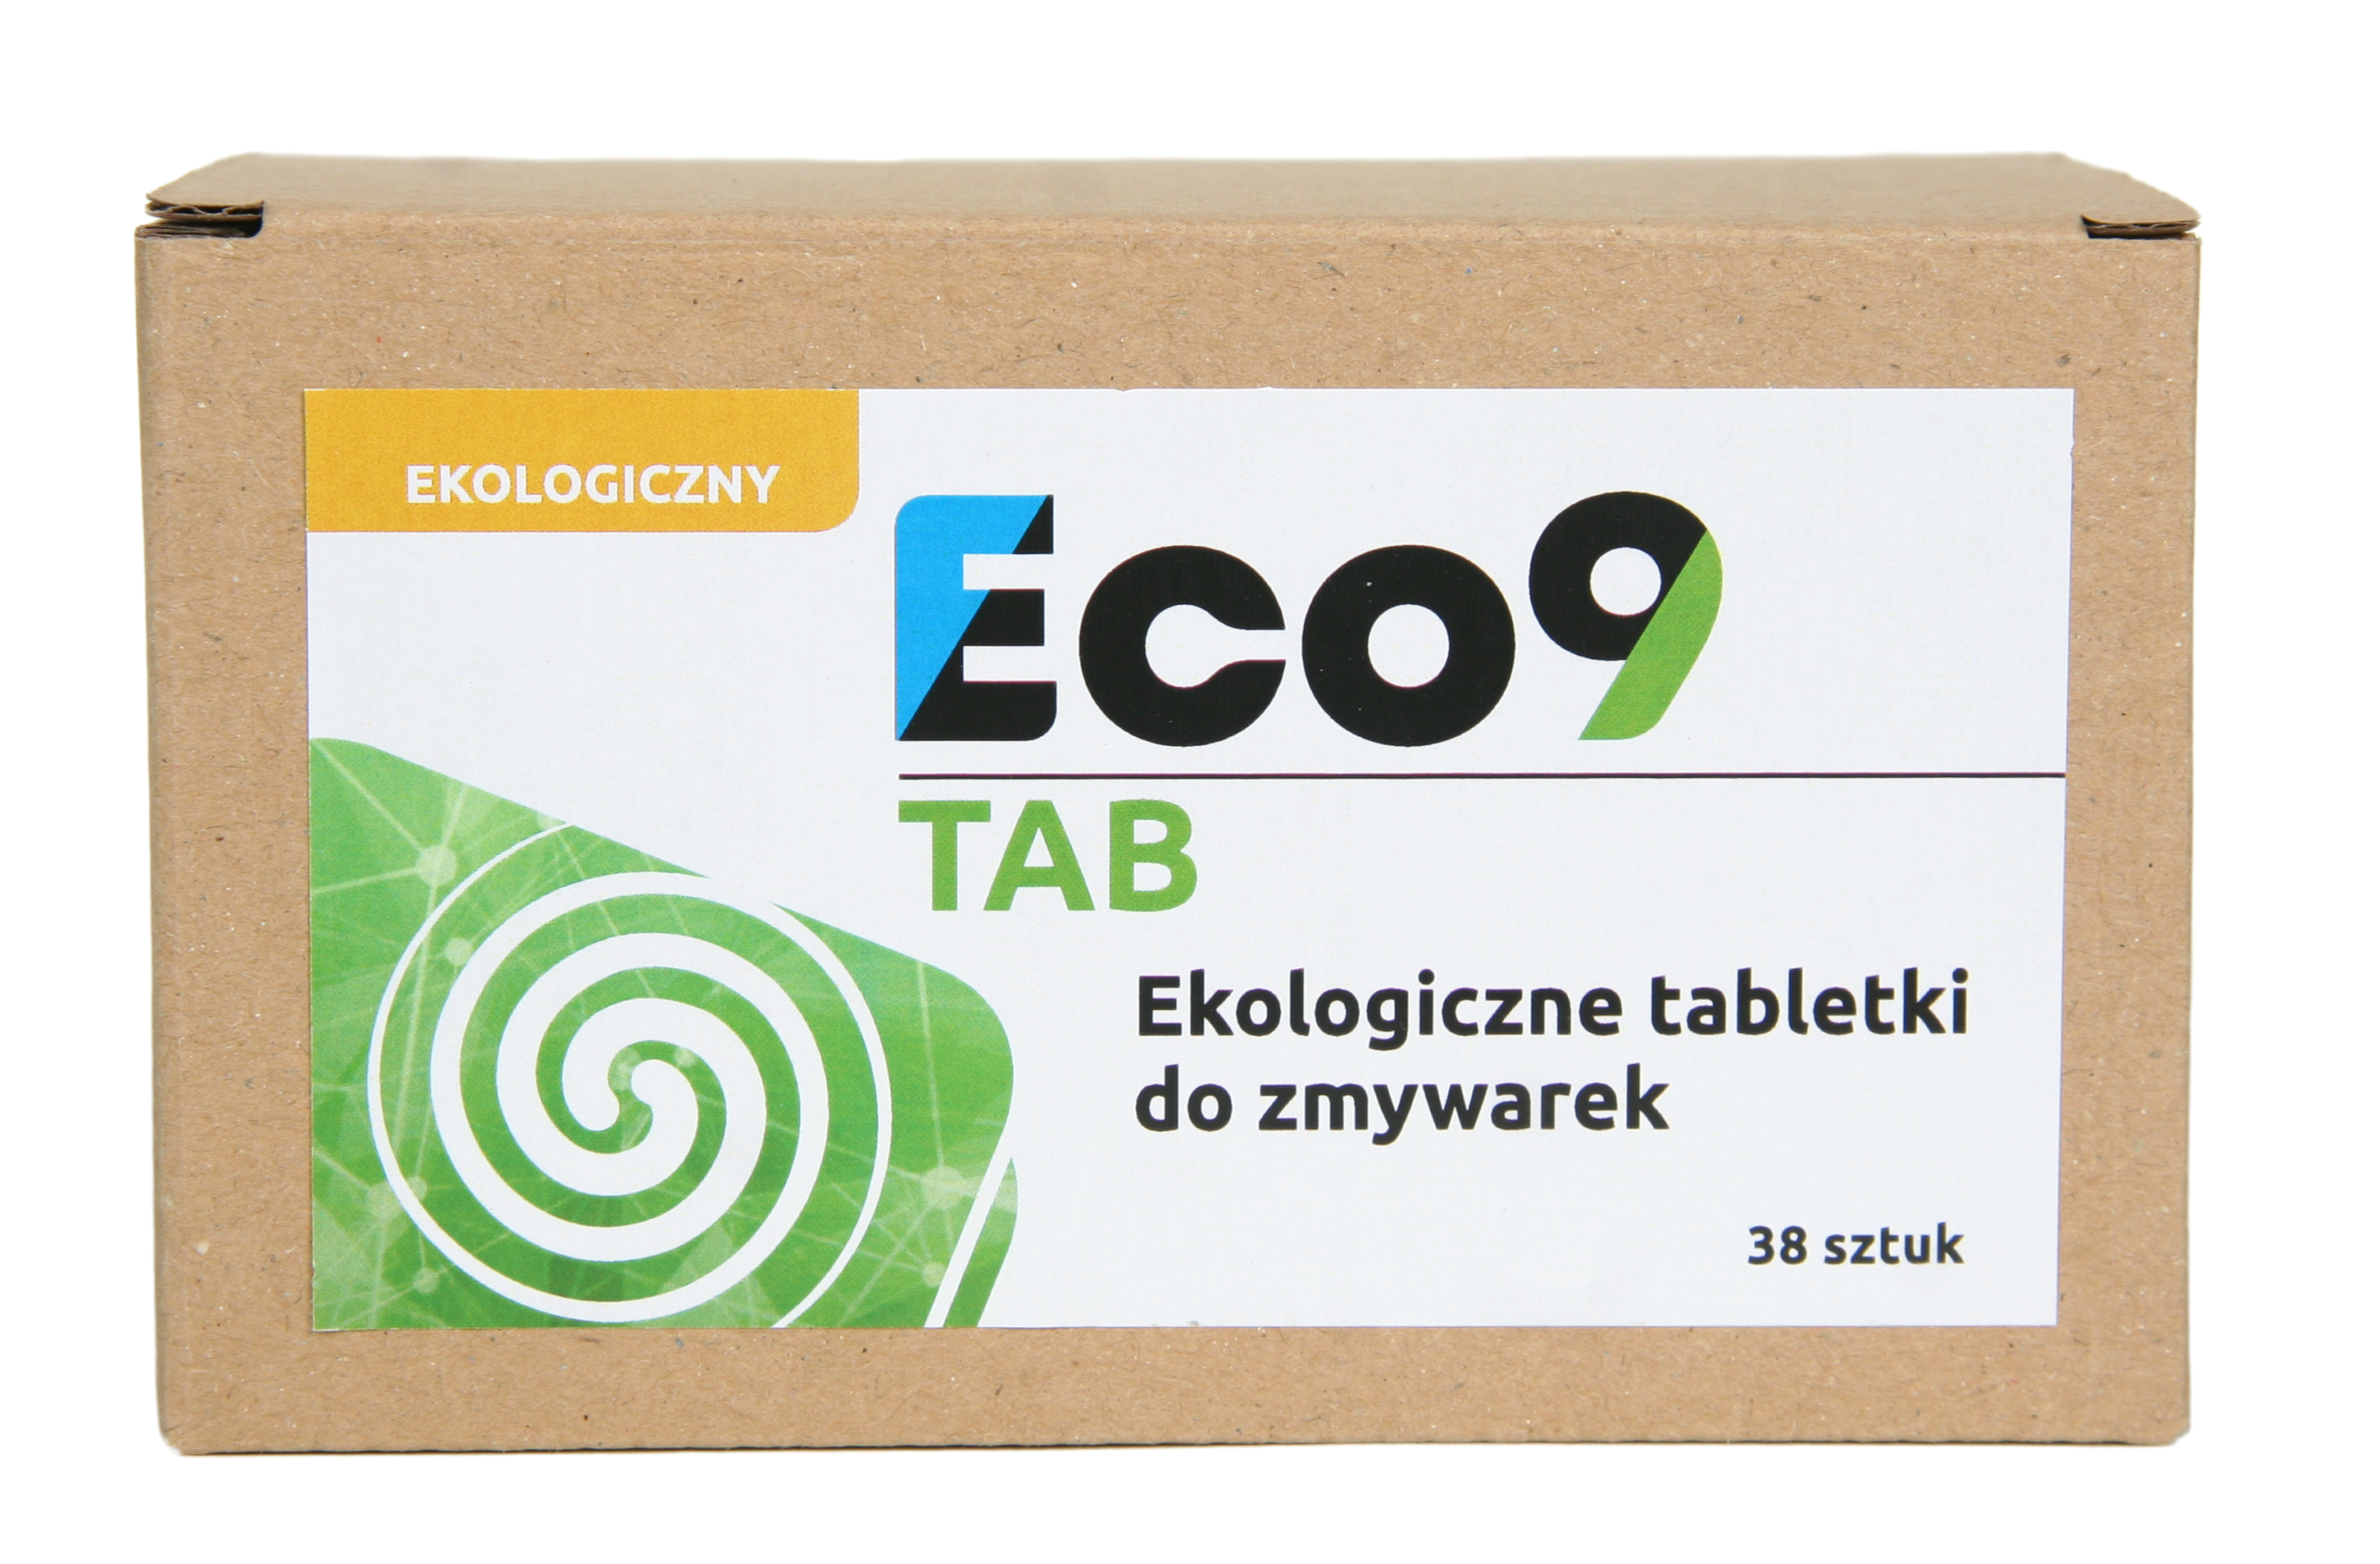 Eco9 TAB ekologiczne tabletki do zmywarki przyjazne dla środowiska